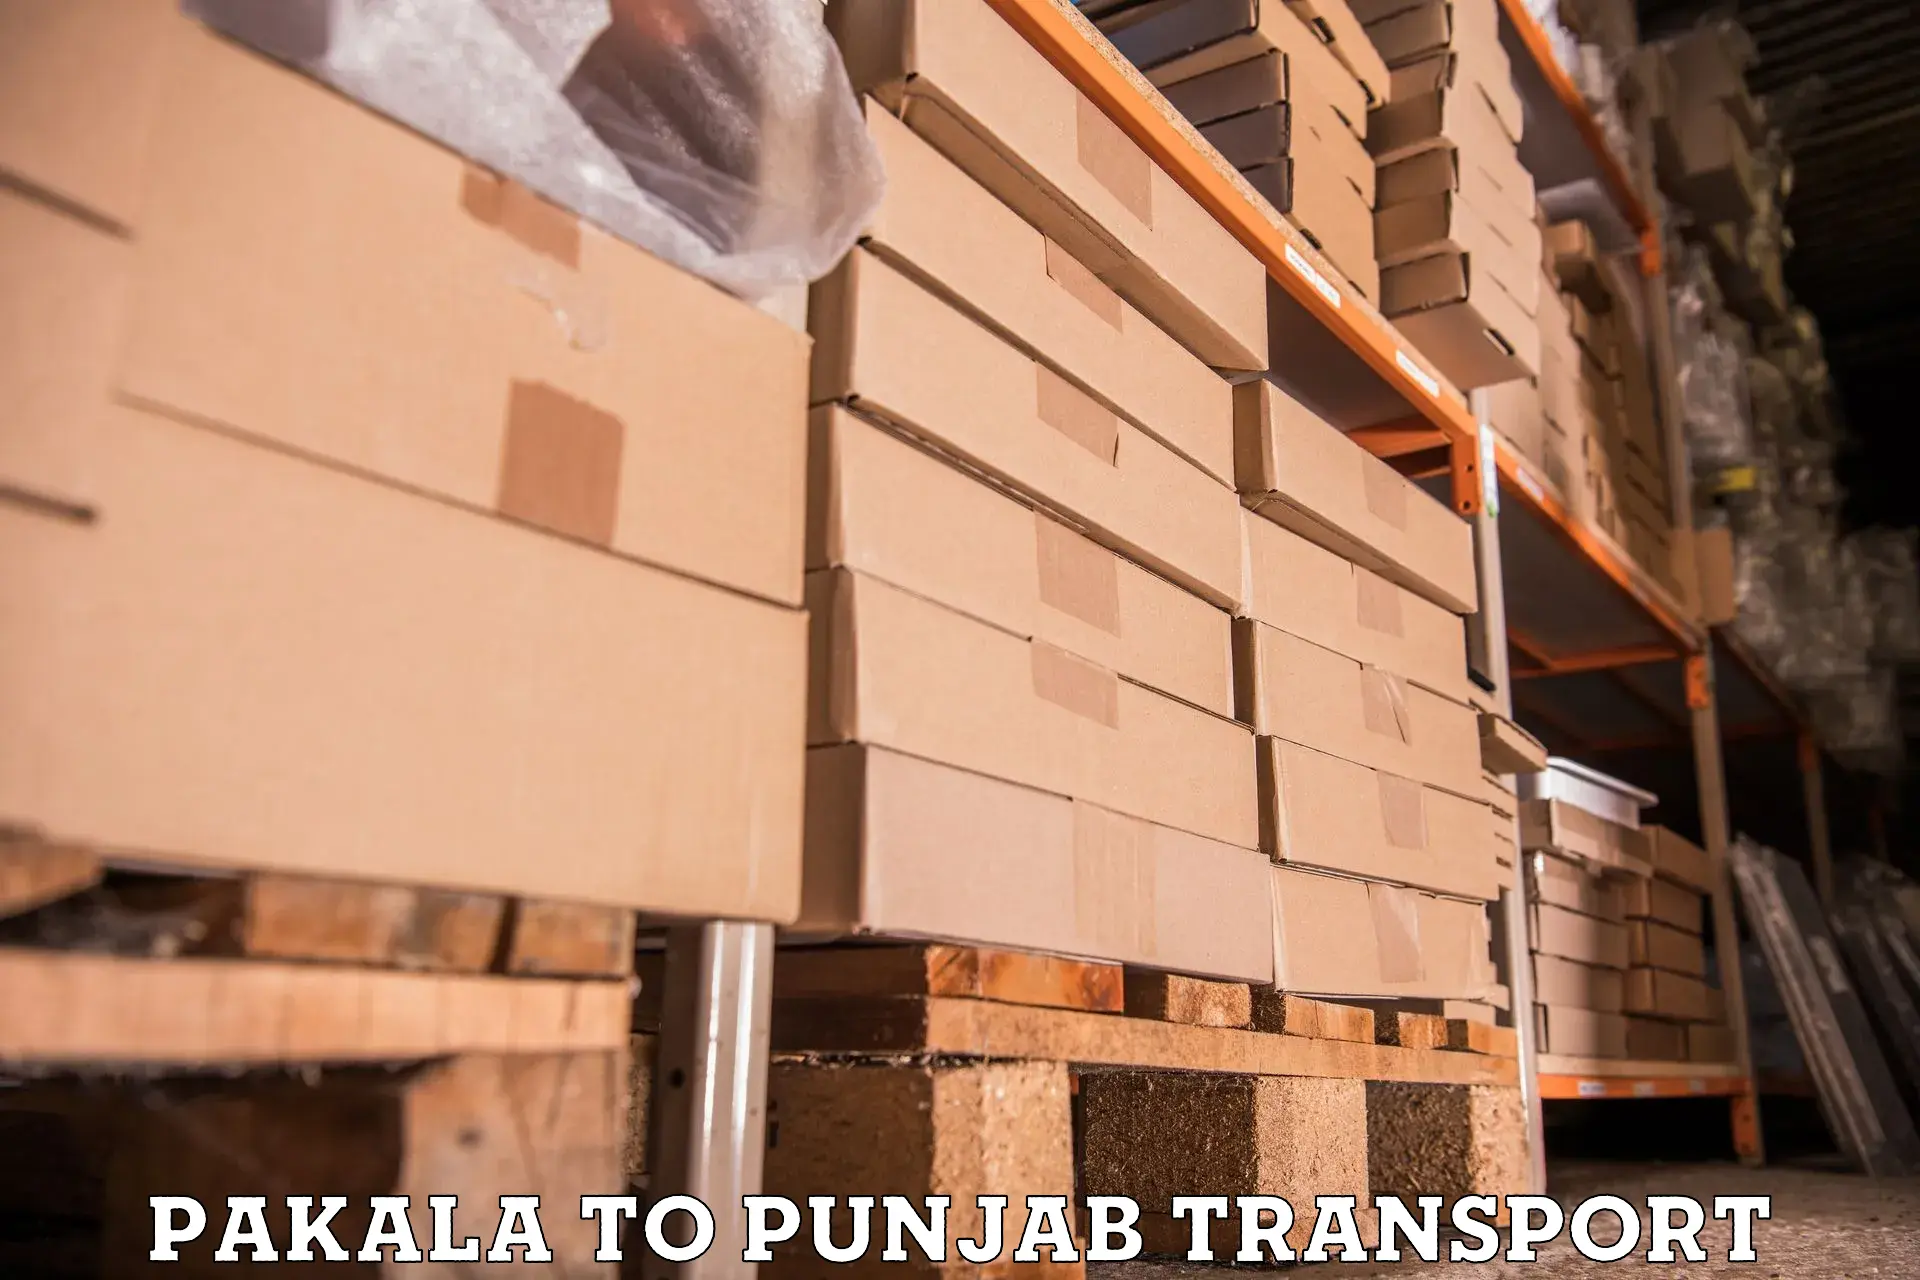 Daily transport service Pakala to Ludhiana